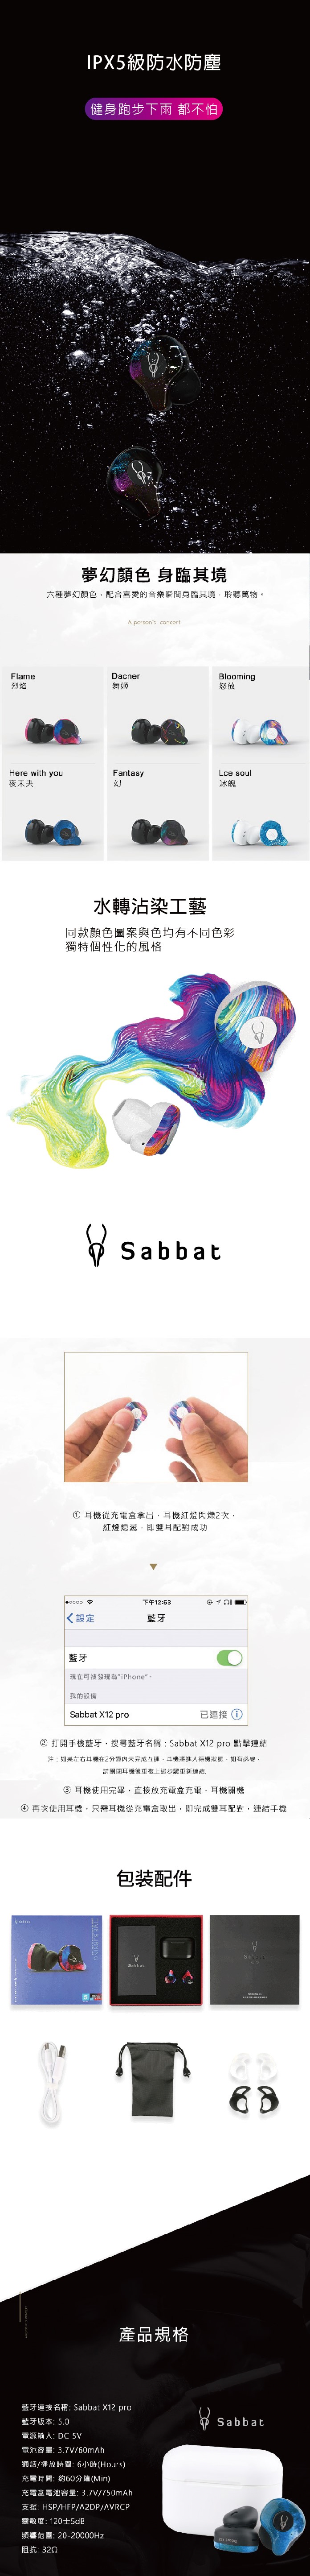 魔宴Sabbat X12 PRO 潮系列 真無線藍牙耳機(6色)(幻)